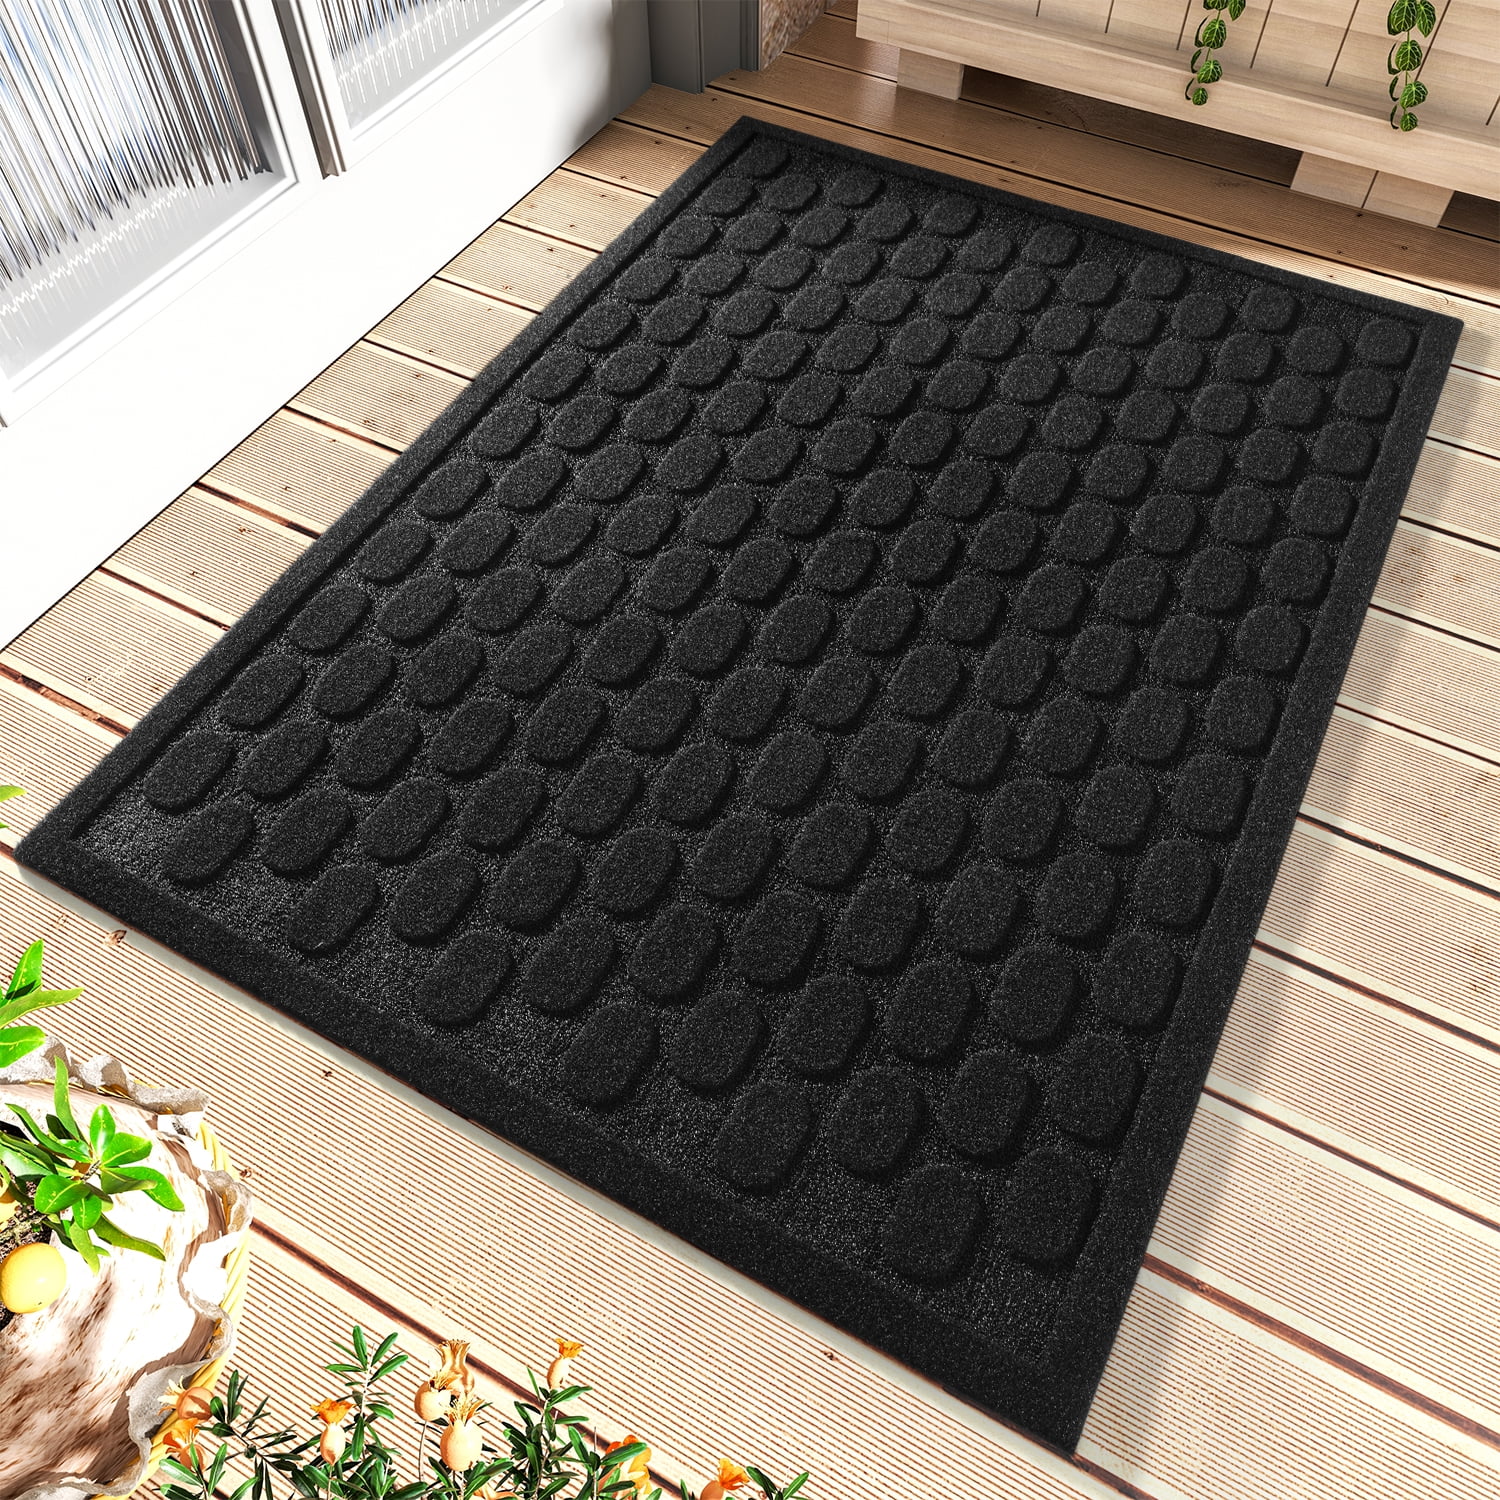 SIXHOME Outdoor Doormat Non Slip 17